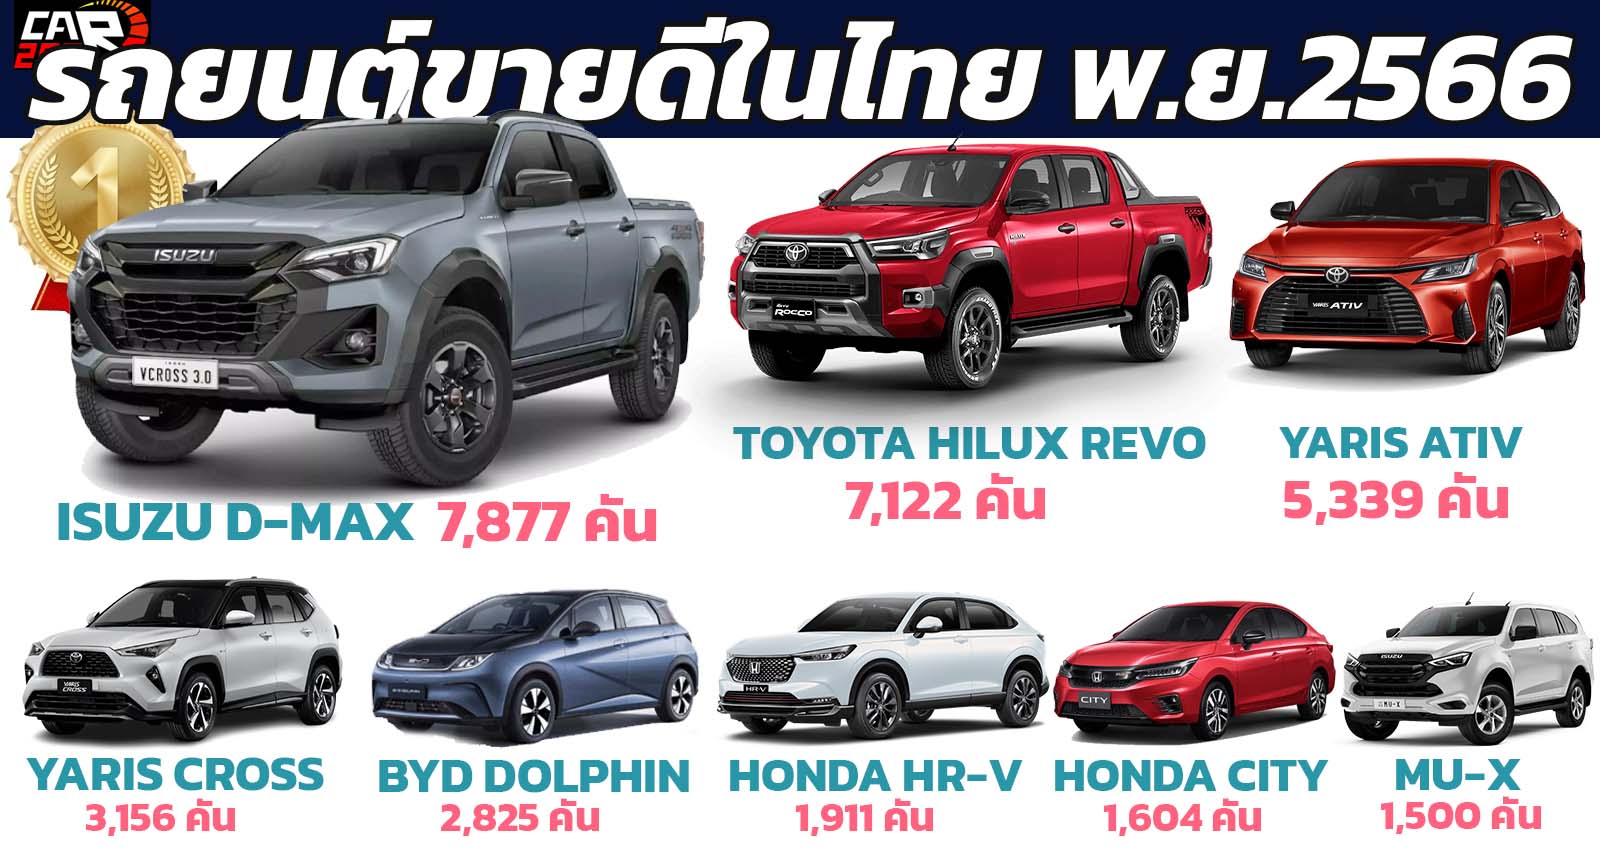 30 รถยนต์ขายดีในประเทศไทย เดือนพฤศจิกายน 2566 ISUZU D-MAX นำอันดับ 1